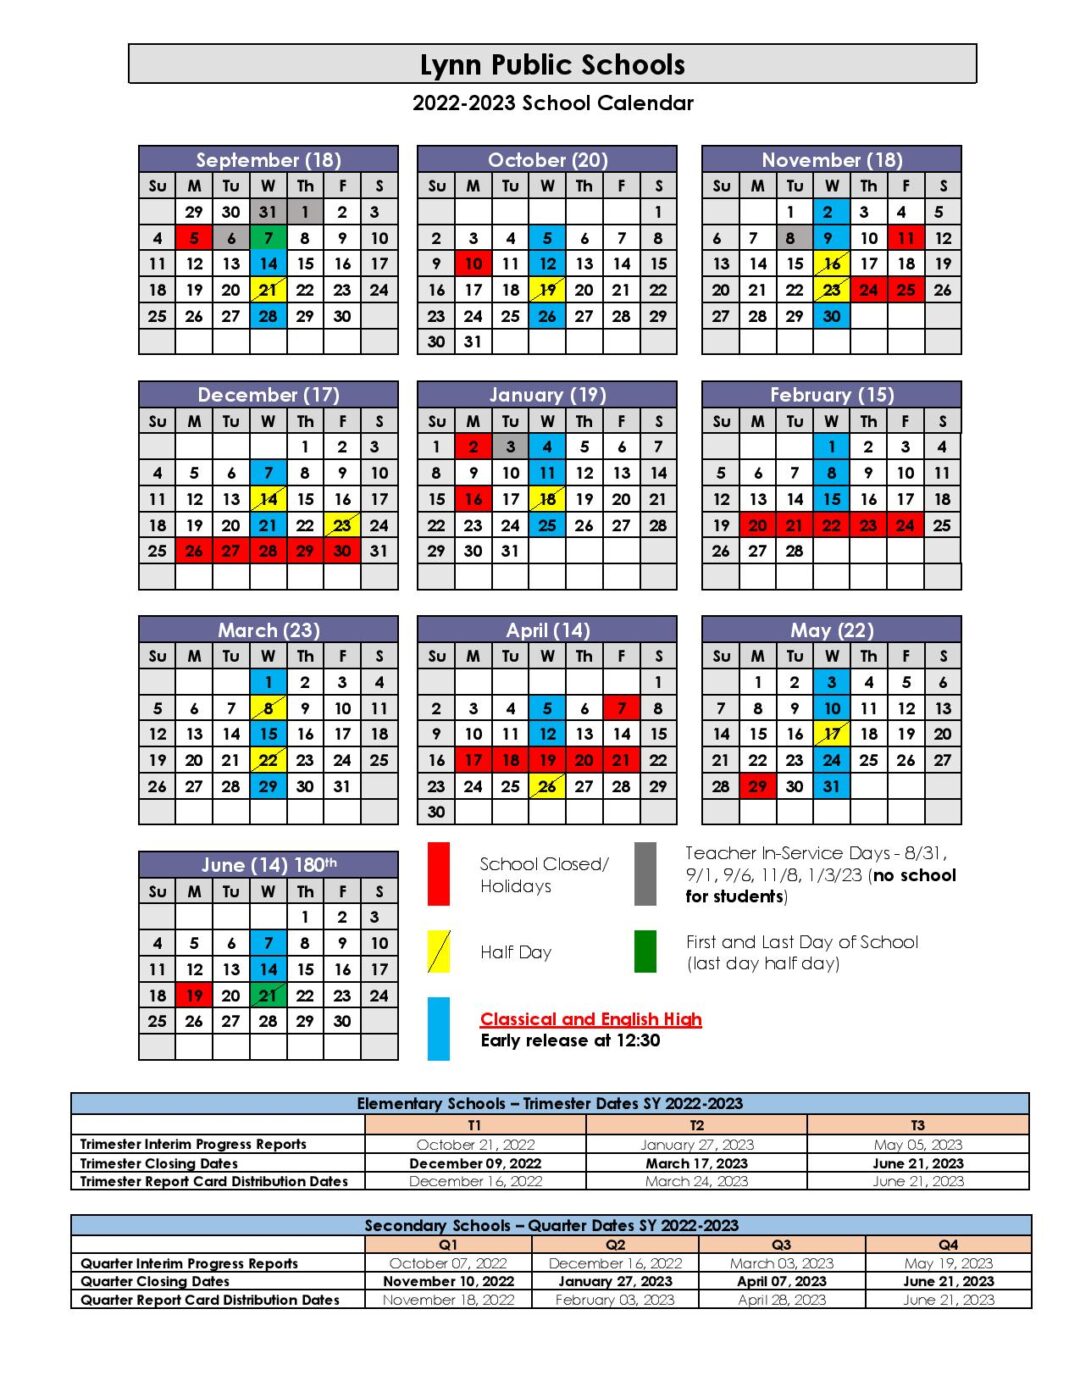 Lynn Public Schools Calendar 20222023 in PDF